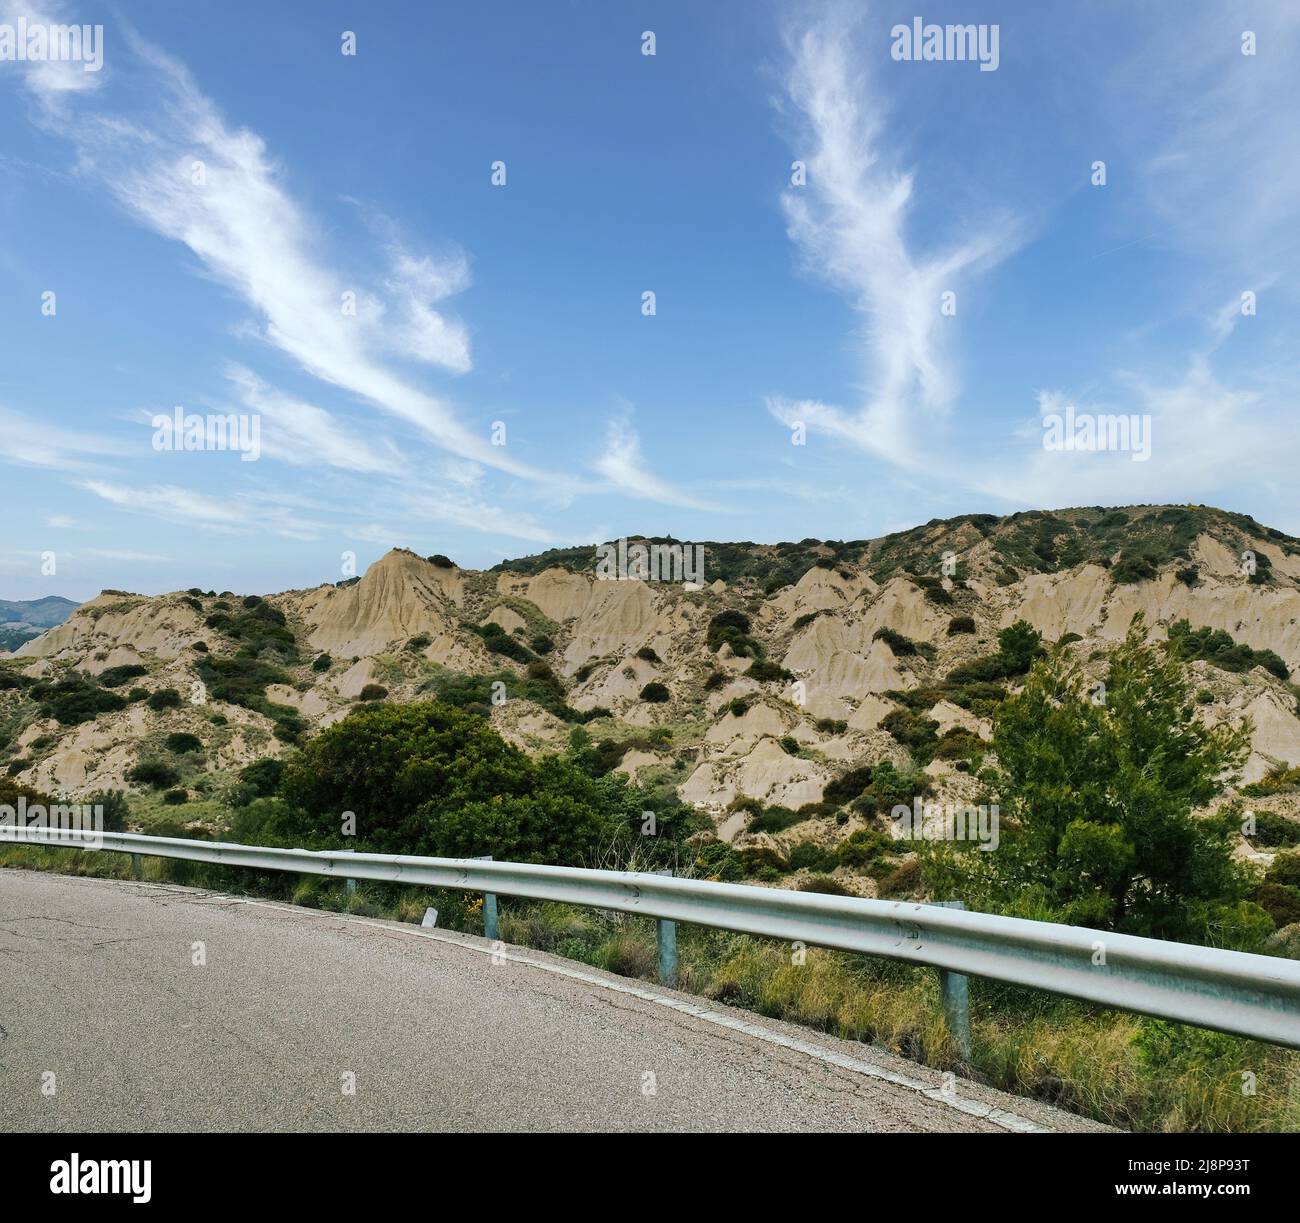 Die schöne Landschaft von Mdera in Basilicata durch die besondere Exformation, die die Calanchi ein besonderes geologisches Phänomen bilden gekennzeichnet Stockfoto